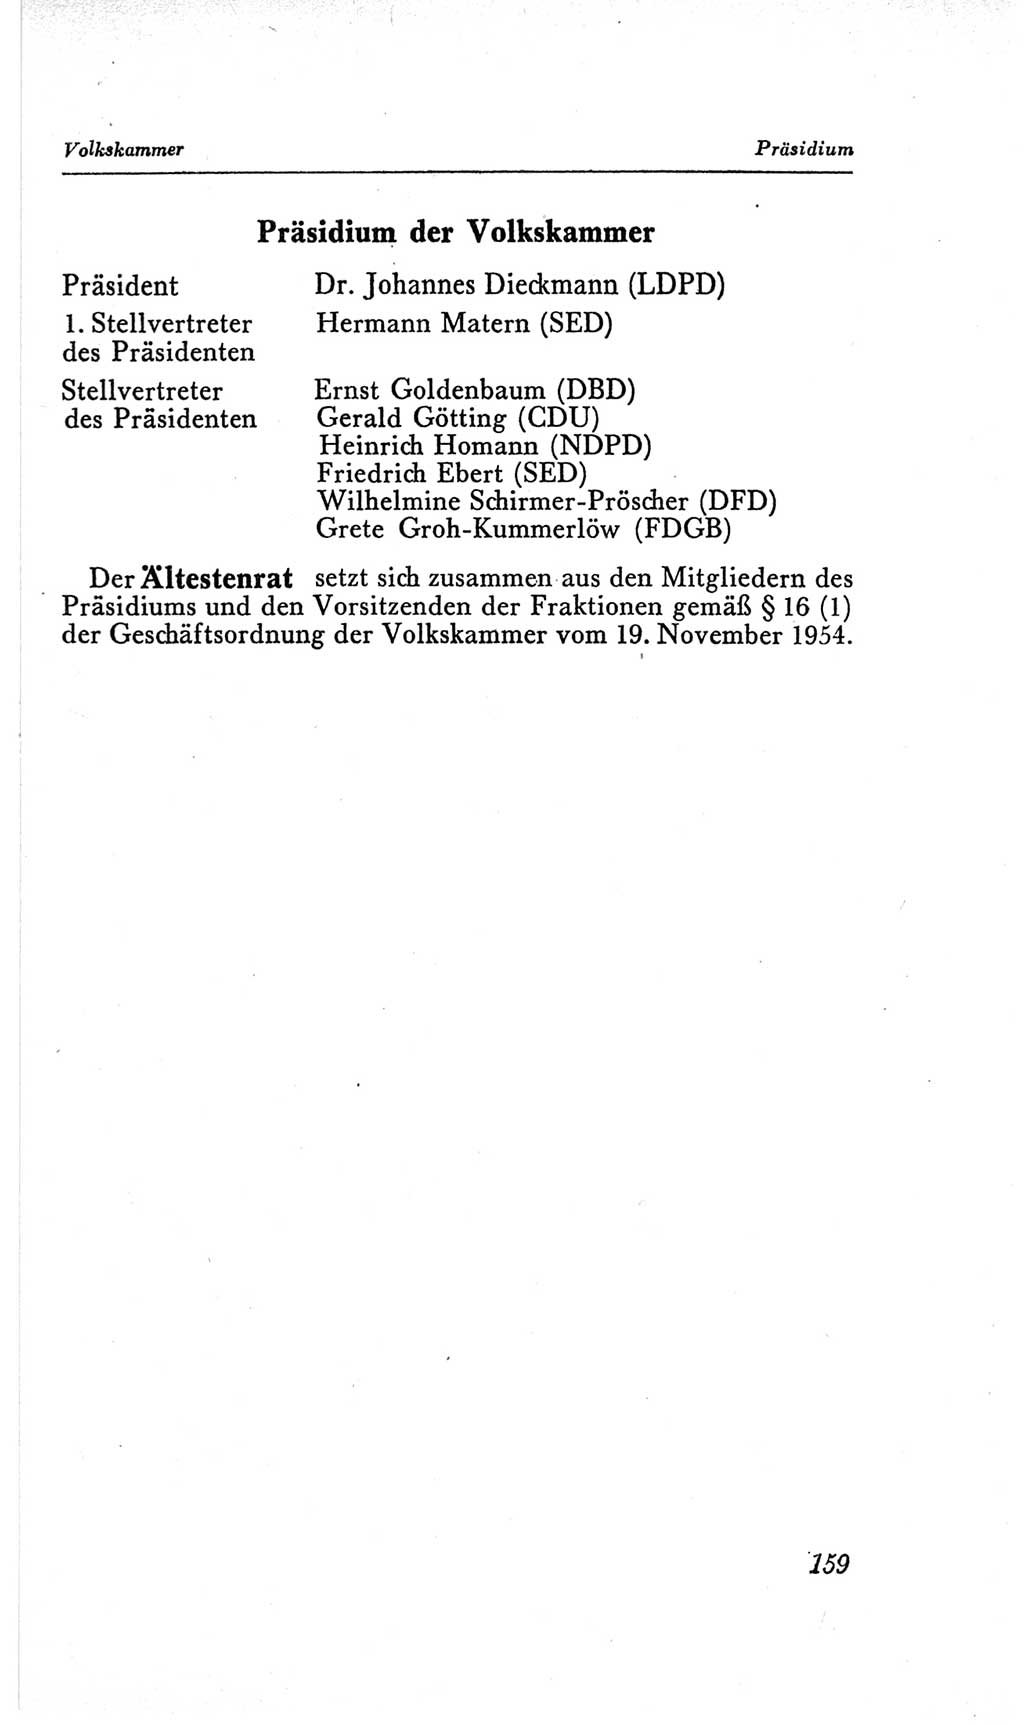 Handbuch der Volkskammer (VK) der Deutschen Demokratischen Republik (DDR), 2. Wahlperiode 1954-1958, Seite 159 (Hdb. VK. DDR, 2. WP. 1954-1958, S. 159)